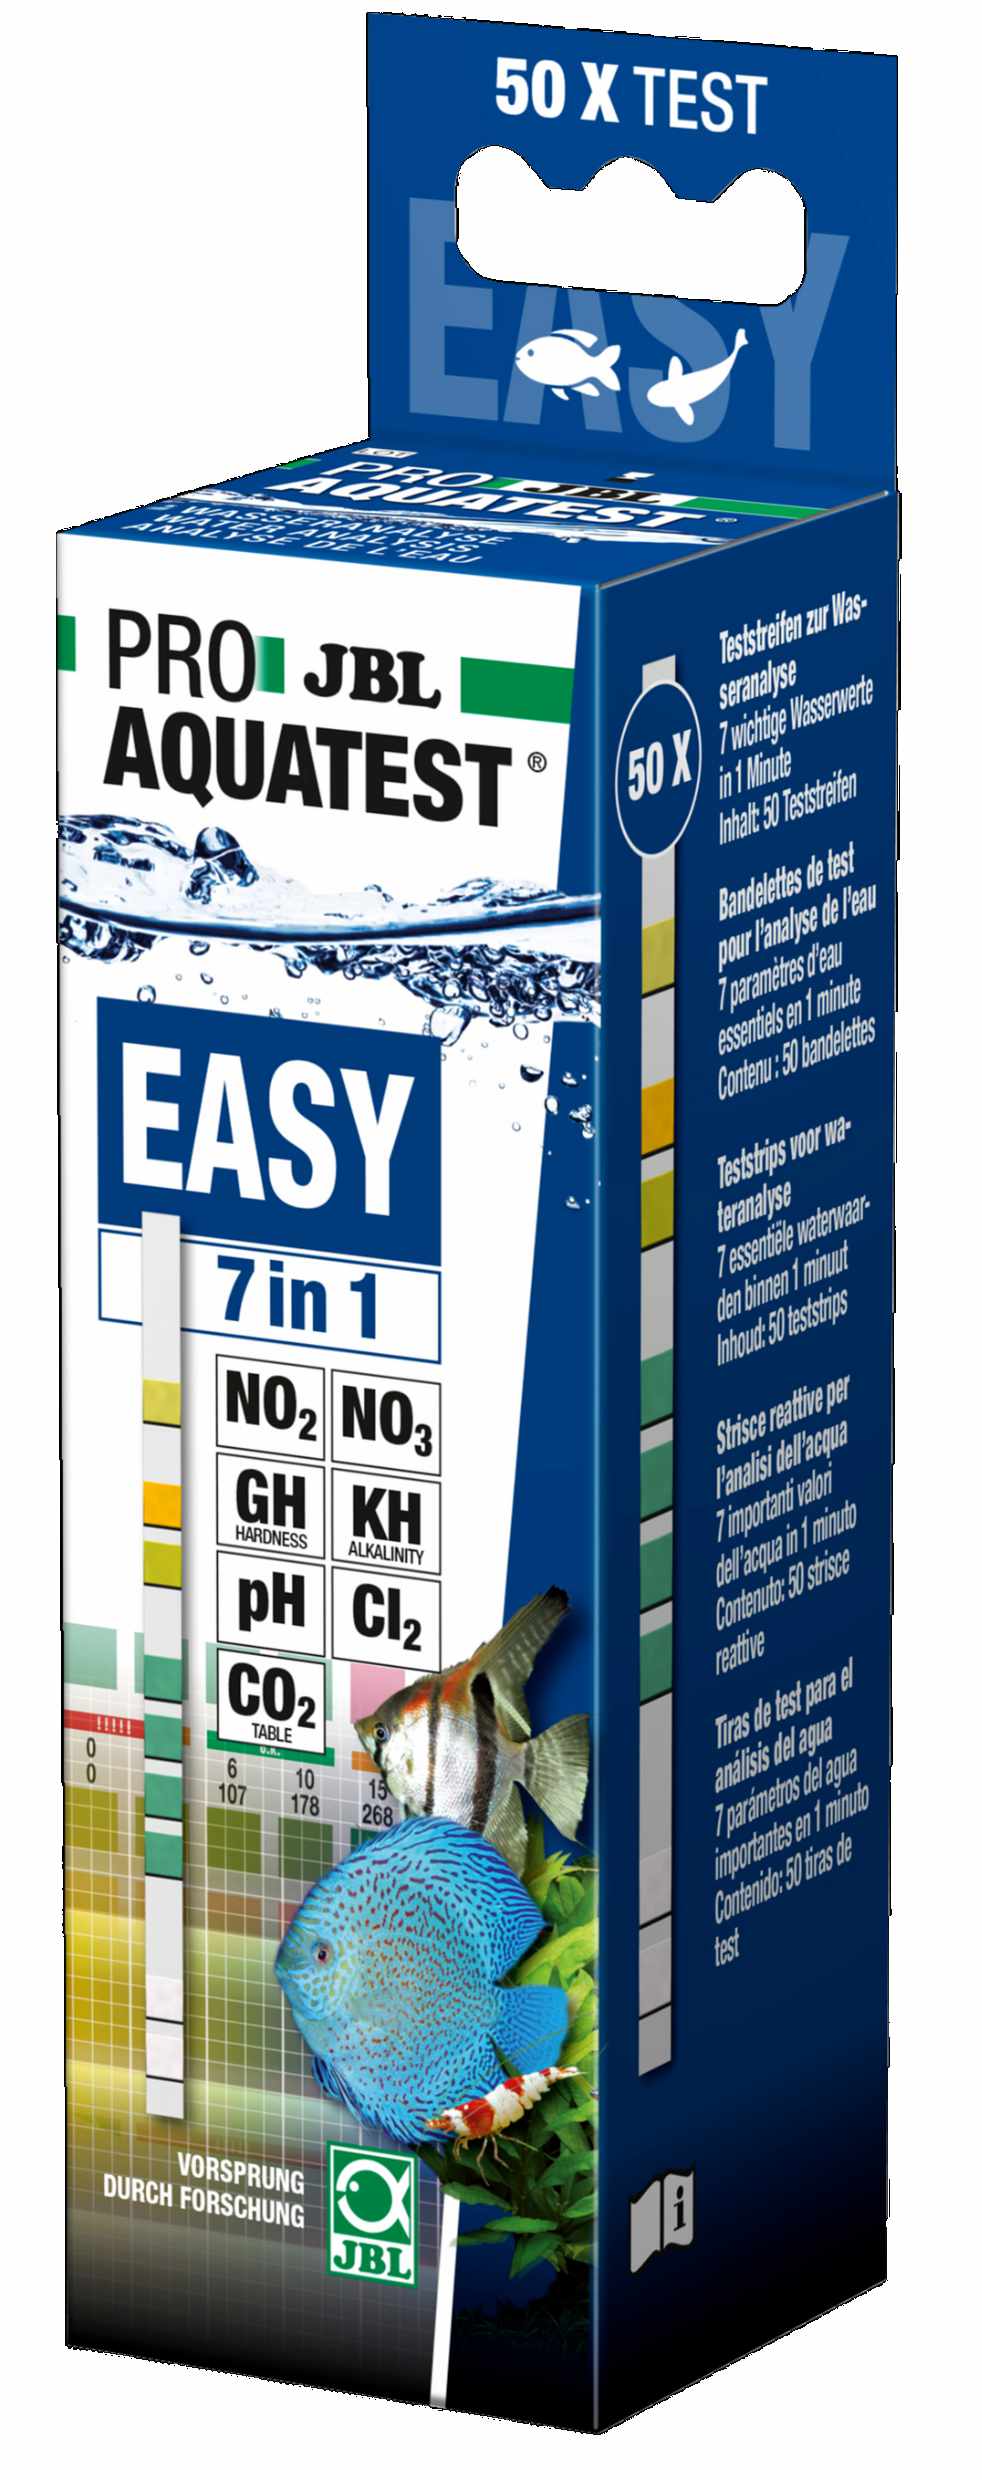 ProAquatest 7-in-1 Test & Display Box Aqua Premium